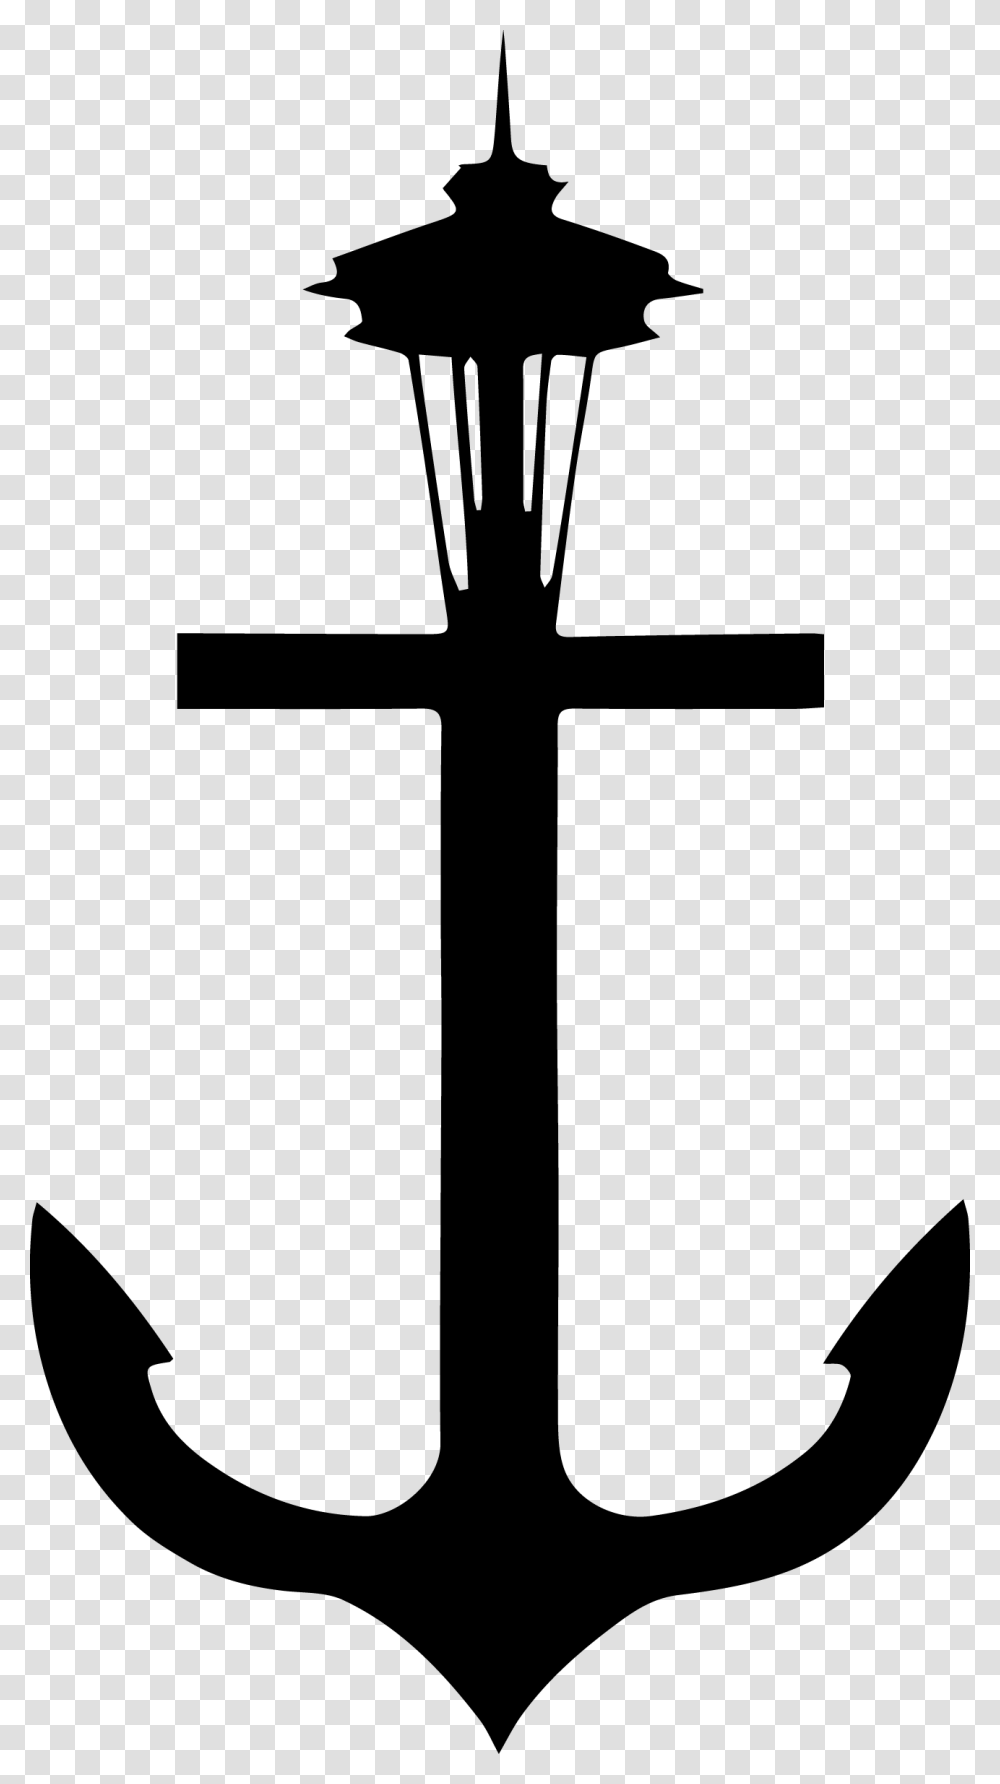 Anchor Black And White Clip Art Ancora Em Fundo Transparente, Cross, Hook Transparent Png